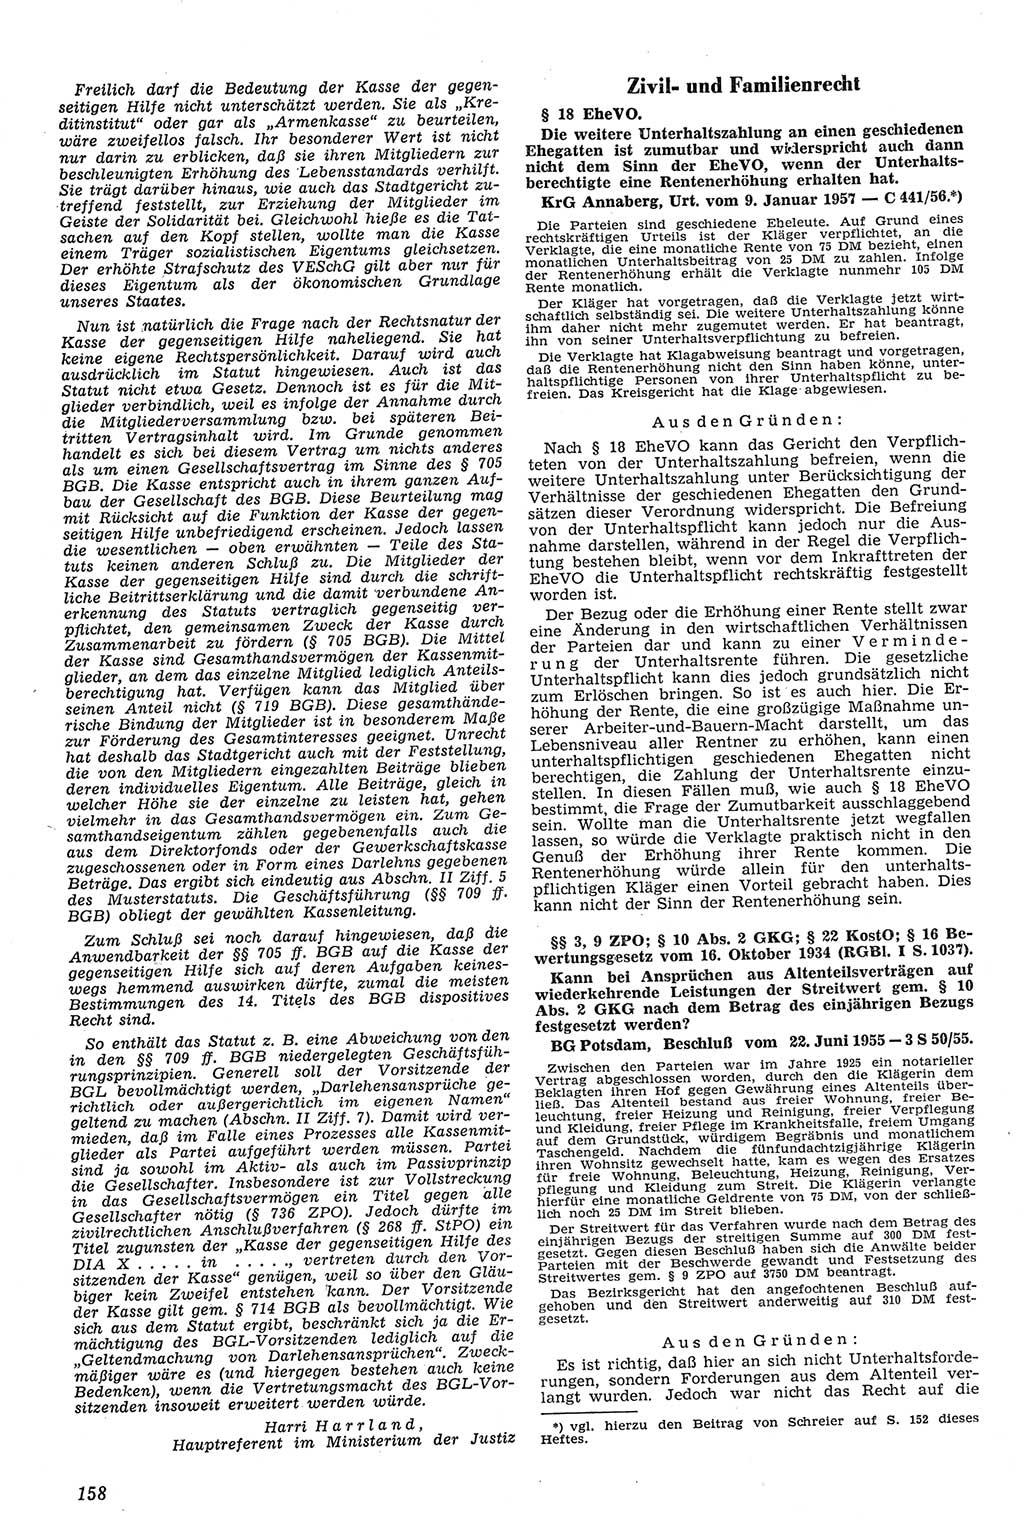 Neue Justiz (NJ), Zeitschrift für Recht und Rechtswissenschaft [Deutsche Demokratische Republik (DDR)], 11. Jahrgang 1957, Seite 158 (NJ DDR 1957, S. 158)